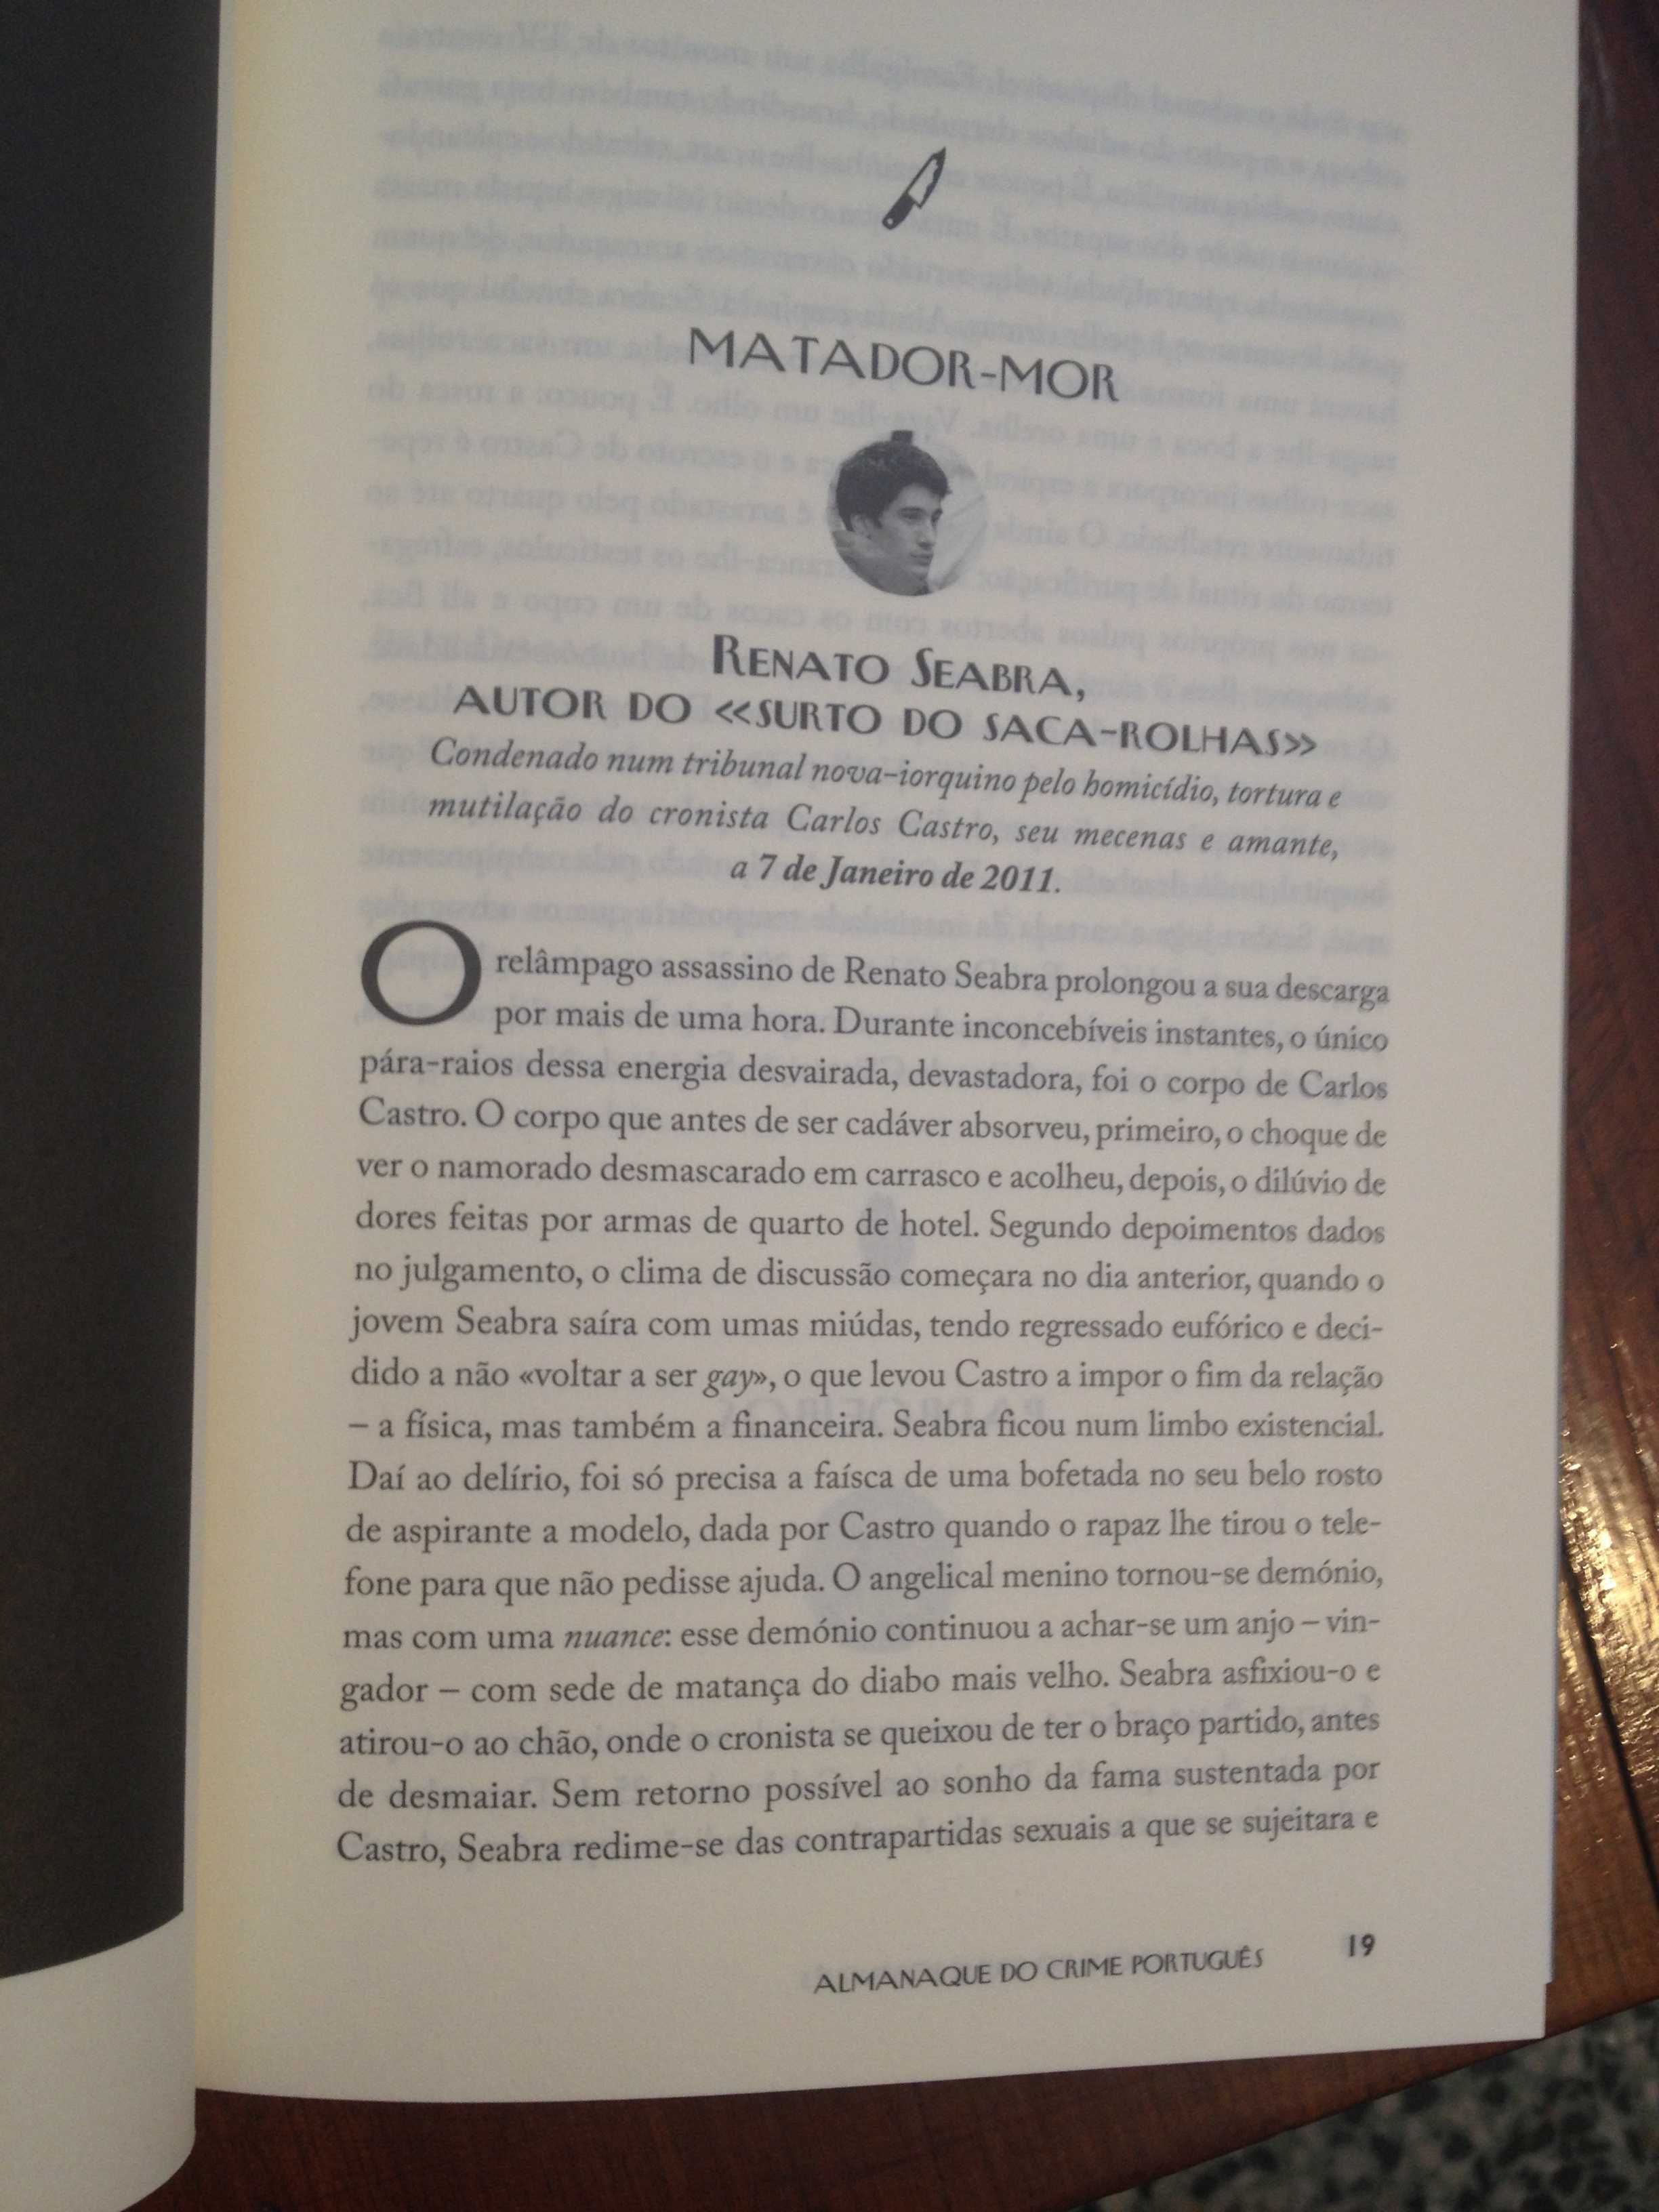 Maria João Medeiros - Almanaque do crime português